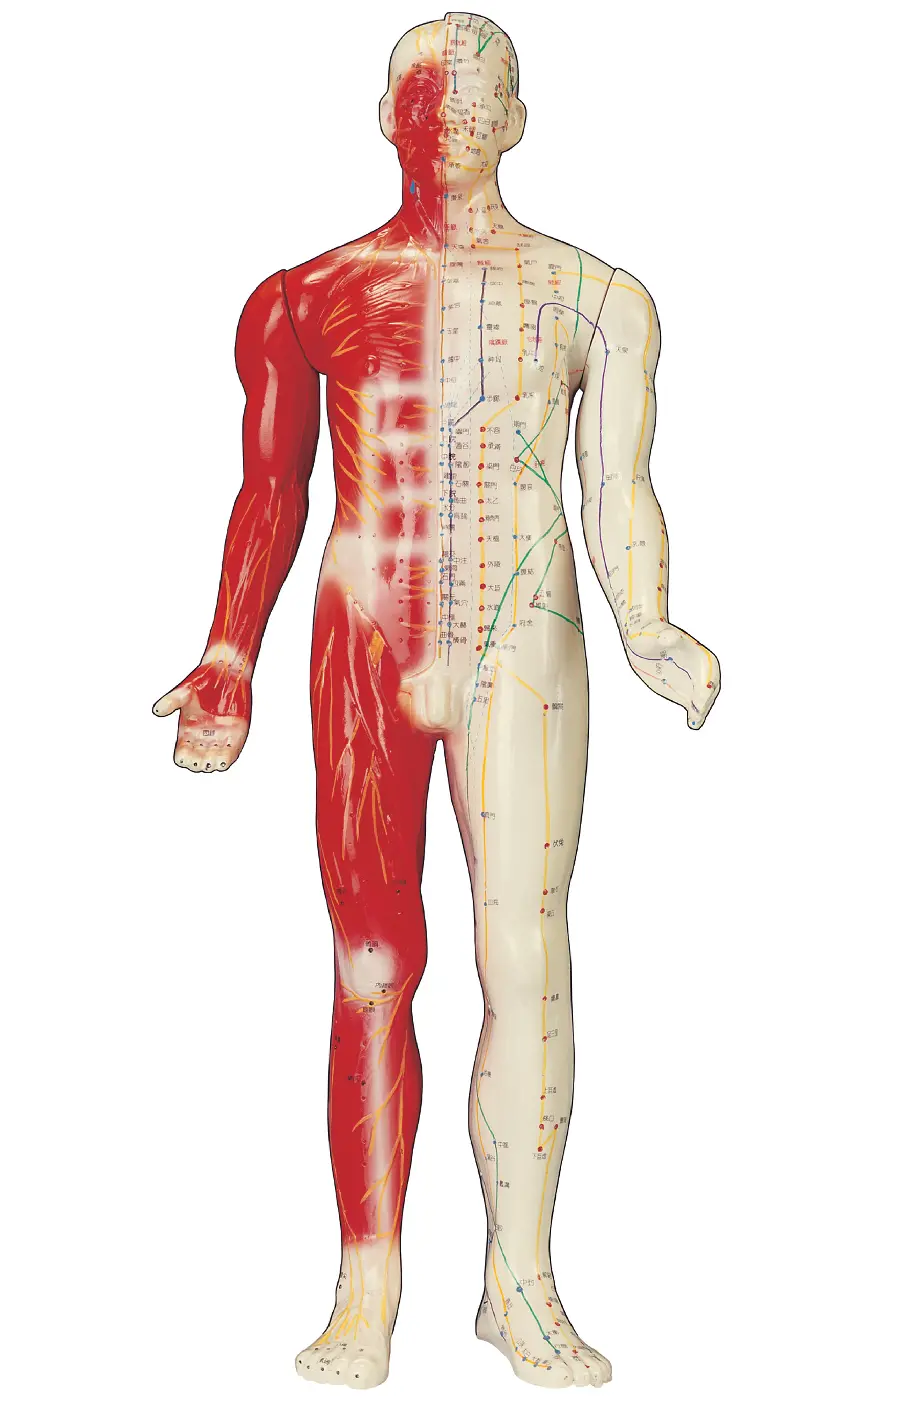 عکس مولاژ بدن انسان برای تحقیقات علمی و پزشکی